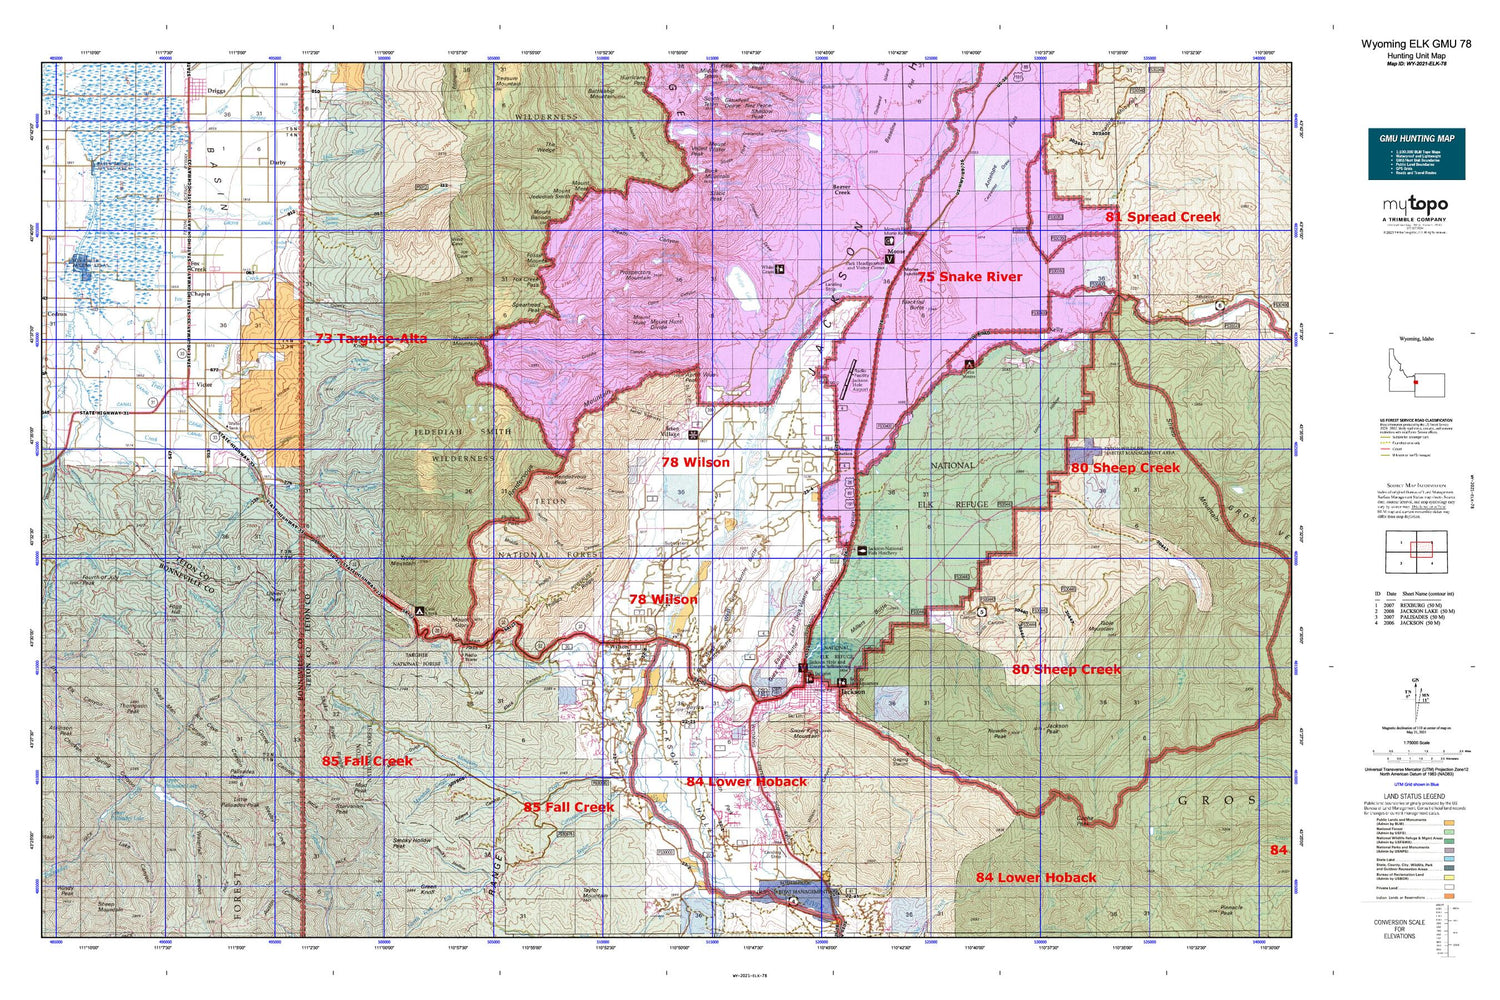 Wyoming Elk GMU 78 Map Image